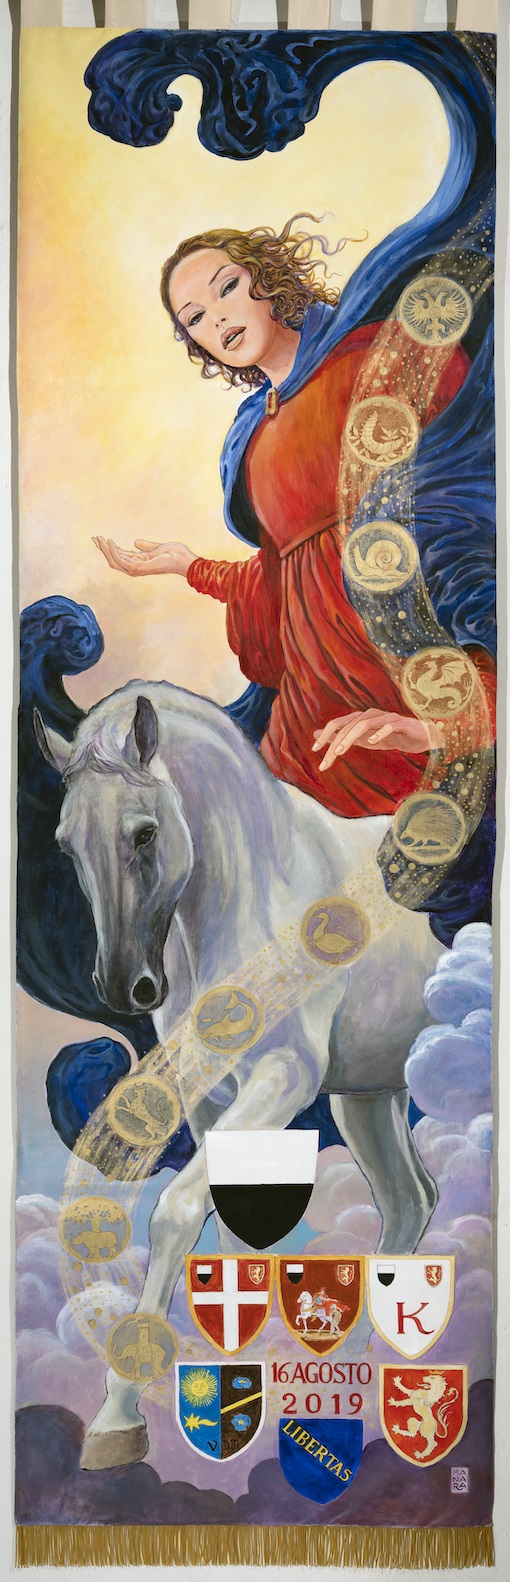 Palio di Siena, ovazione per ‘cencio’ dipinto da Milo Manara per carriera del 16 agosto